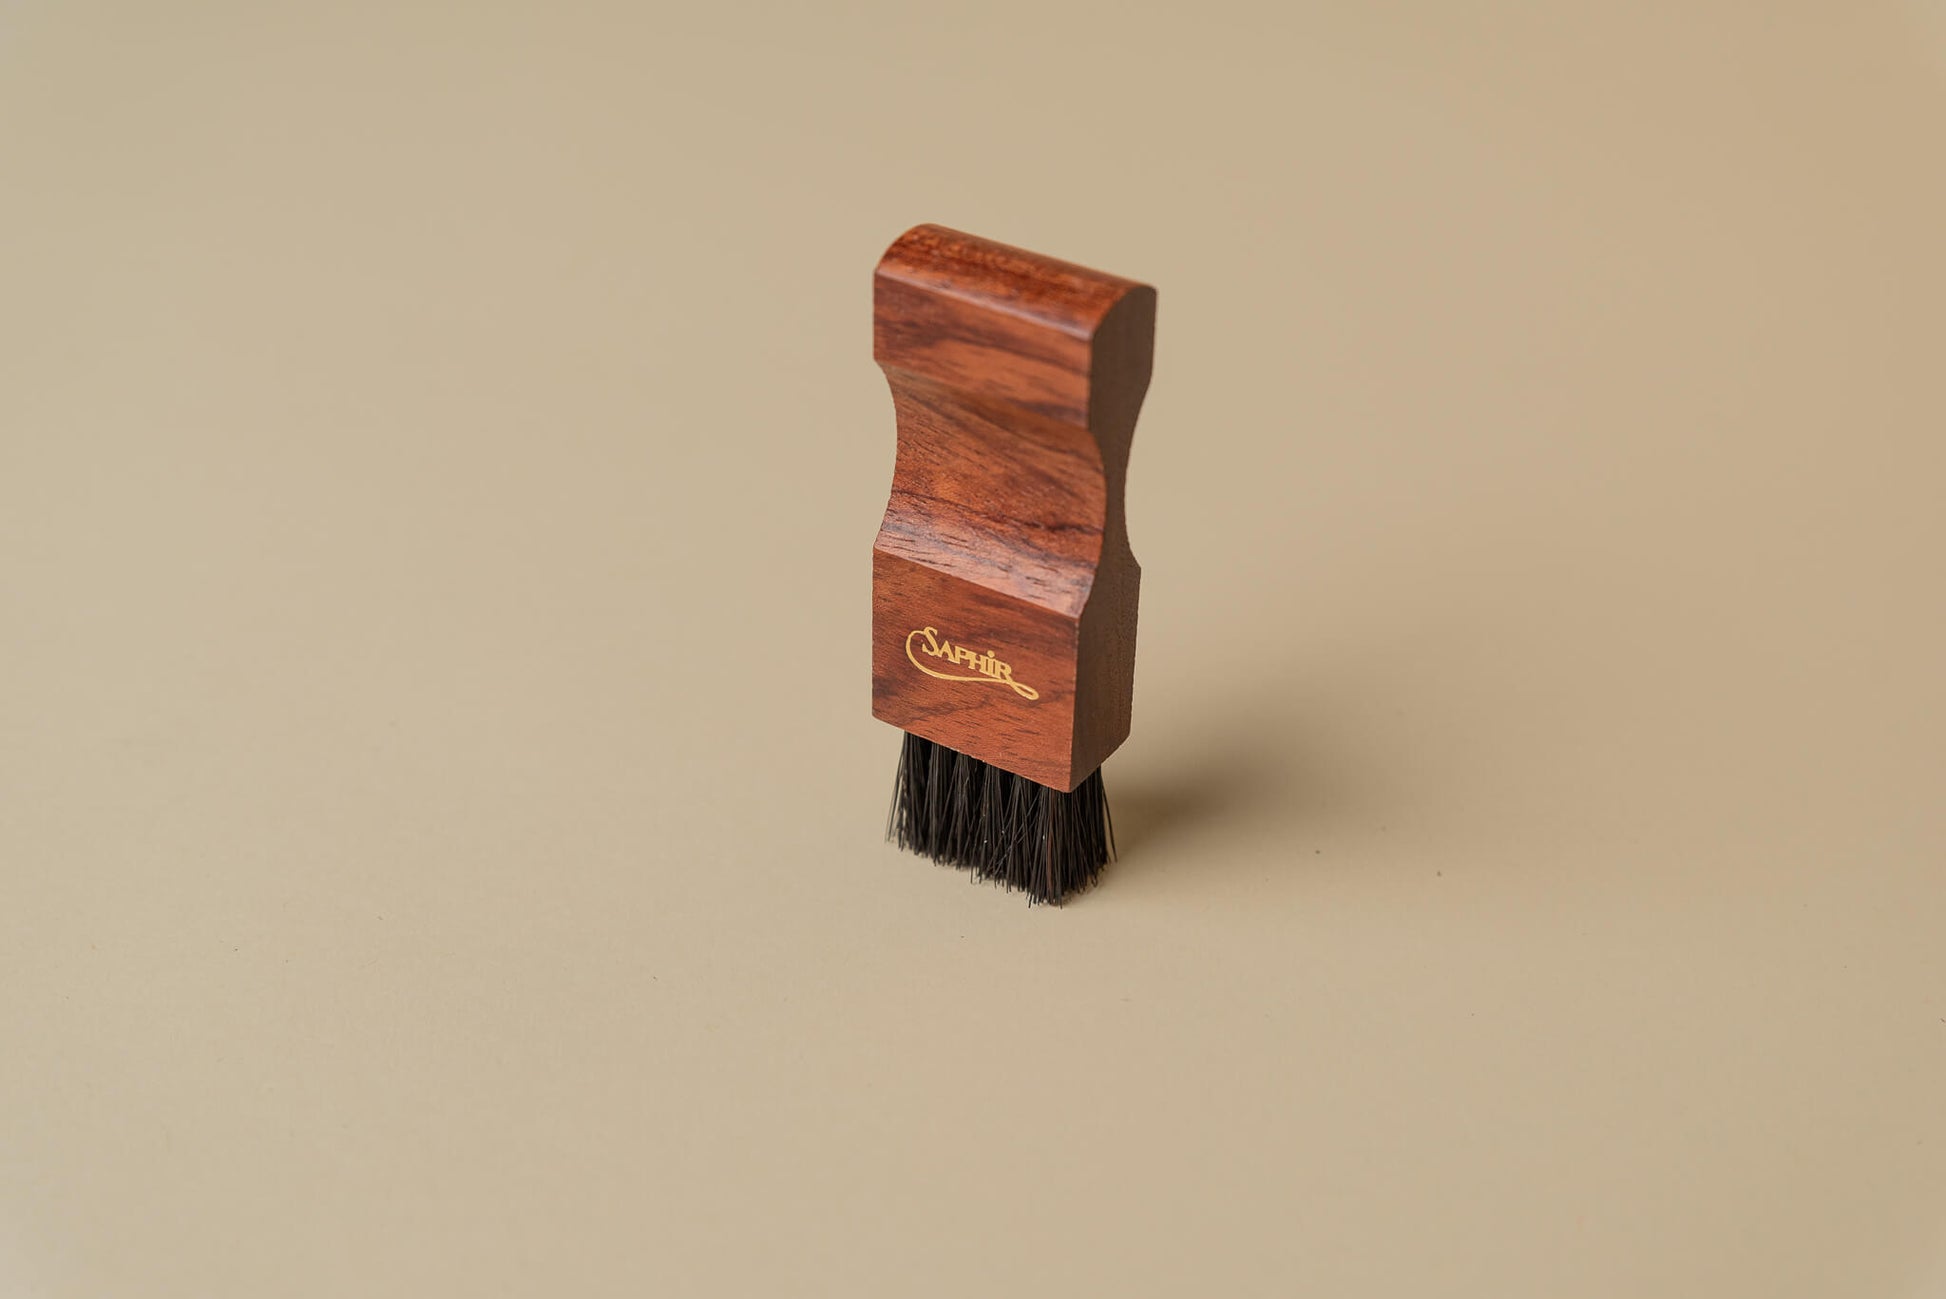 Saphir Medaille d'Or 1925 Wood Small Dauber Applicator Horse Hair Brush 3.5" - Brillare 6